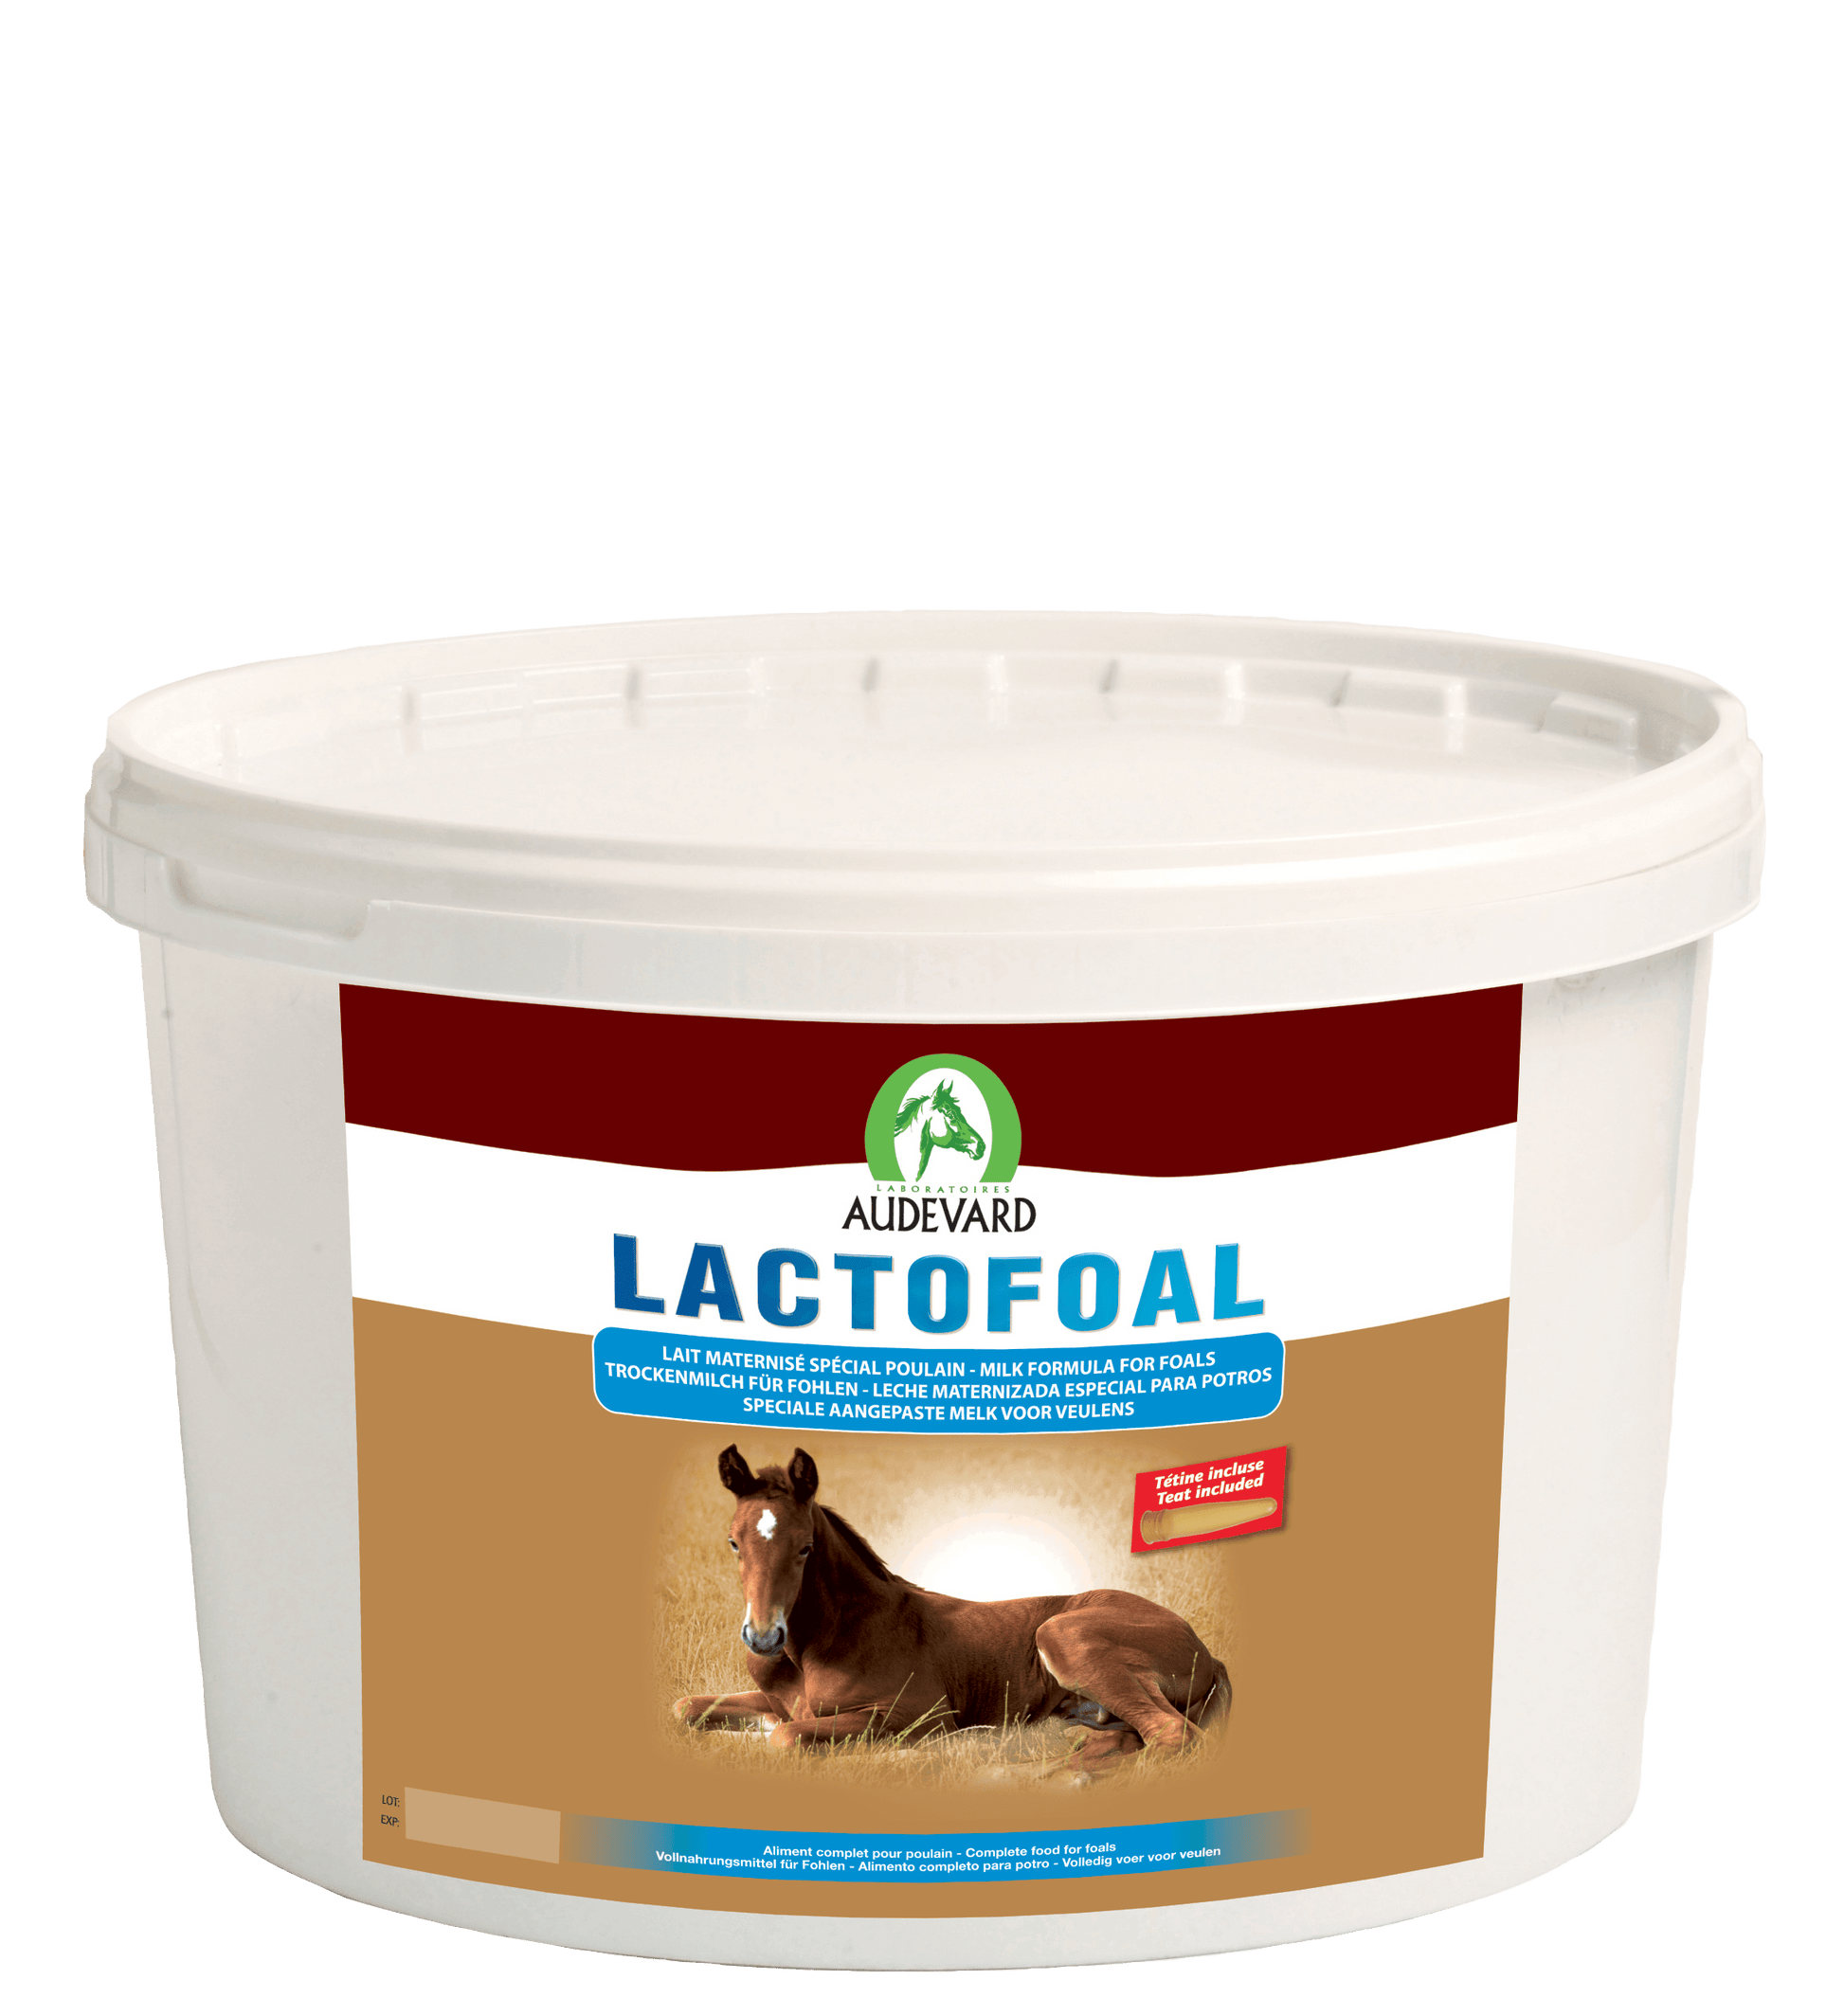 Lactofoal - Audevard - Darreichungsform:Pulver, Ergänzungsfuttermittel:Zucht & Aufzucht, Hersteller:Audevard, Tierart:Pferd - Marigin AG Onlineshop für Tierbedarf